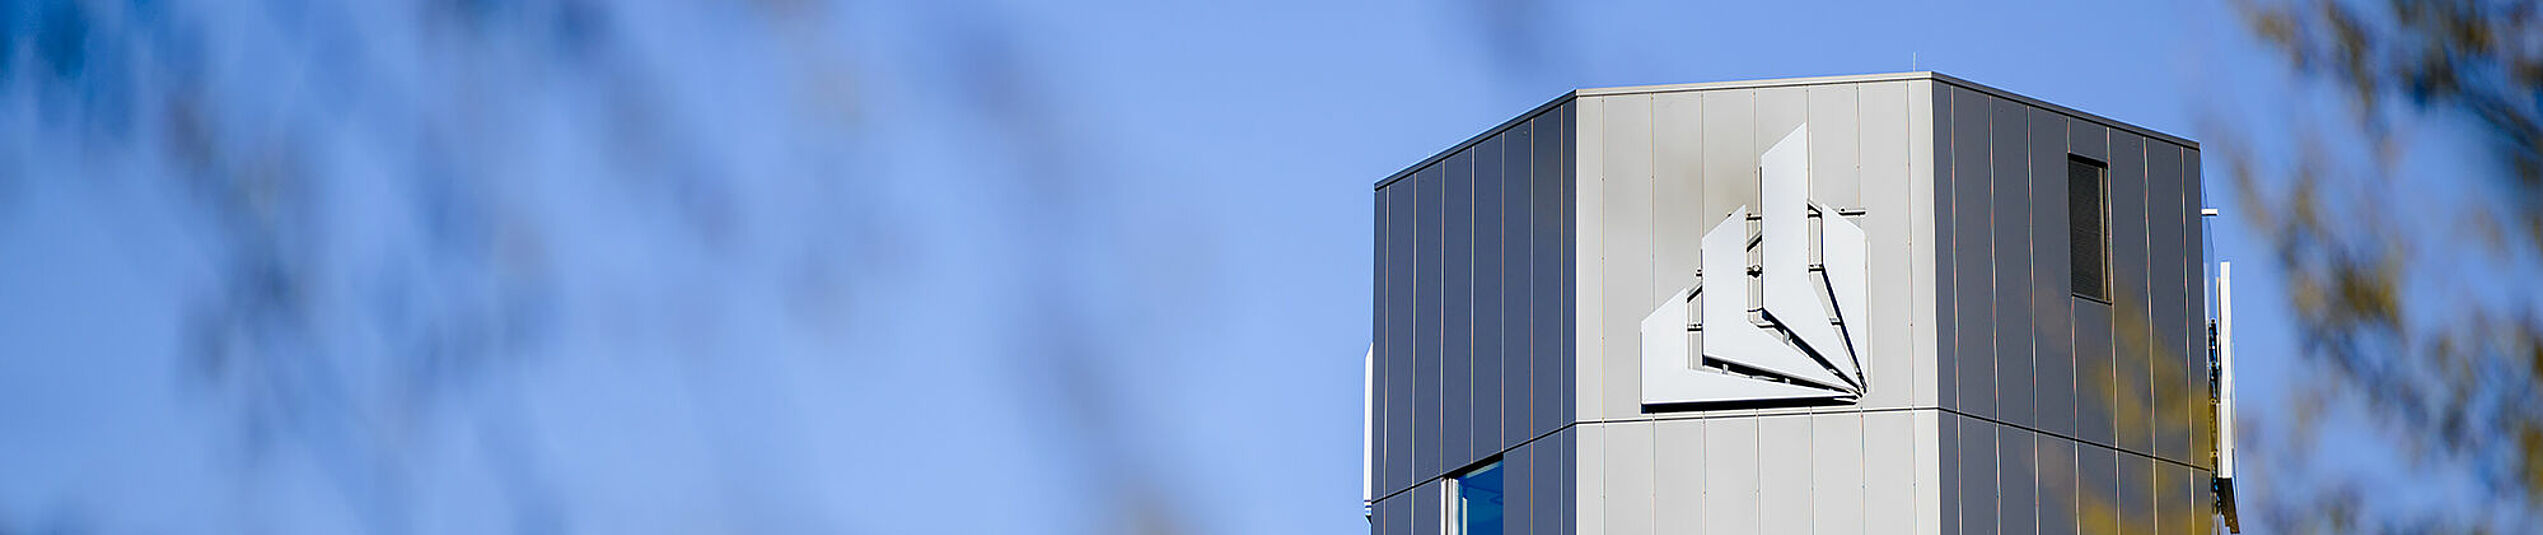 Der obere Teil des dunkelgrauen oktaedrischen Turm mit der Bildmarke des Logos der Uni Paderborn vor blauem Himmel.